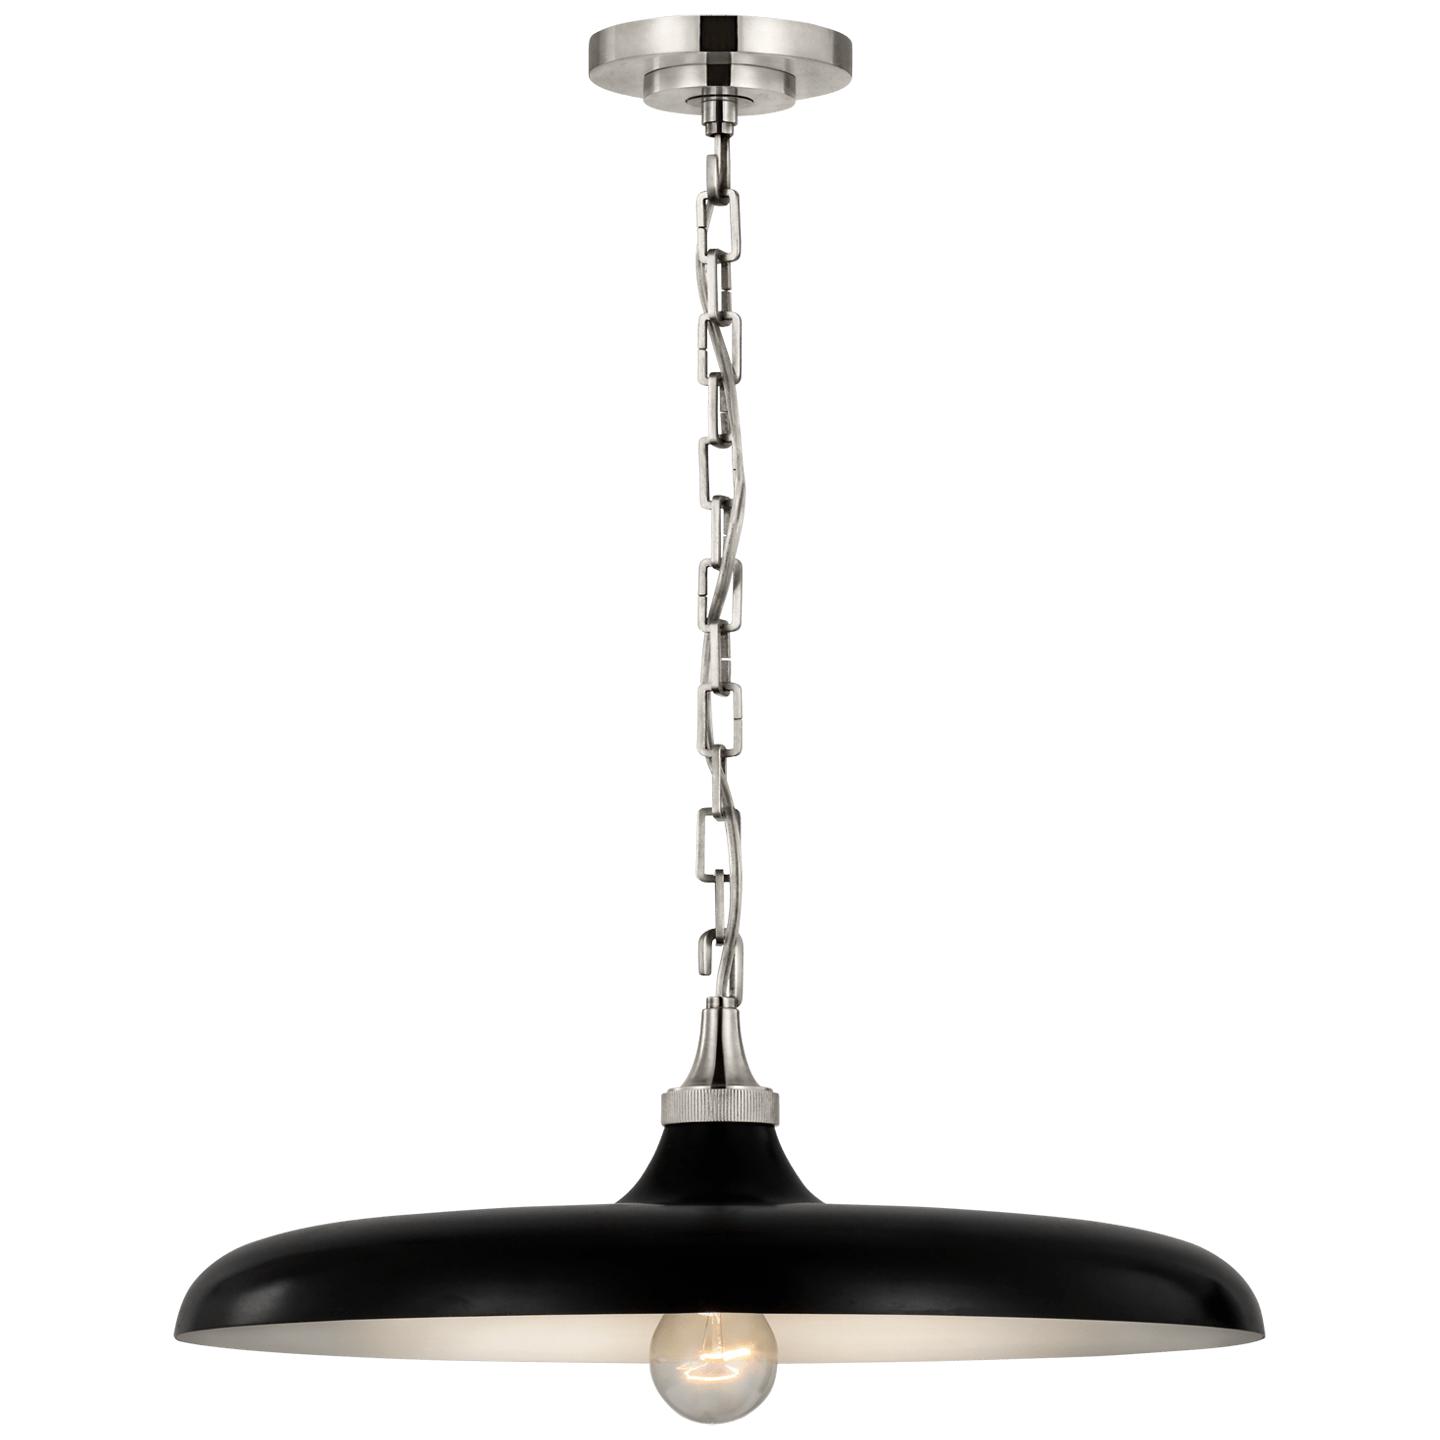 Купить Подвесной светильник Piatto Medium Pendant в интернет-магазине roooms.ru